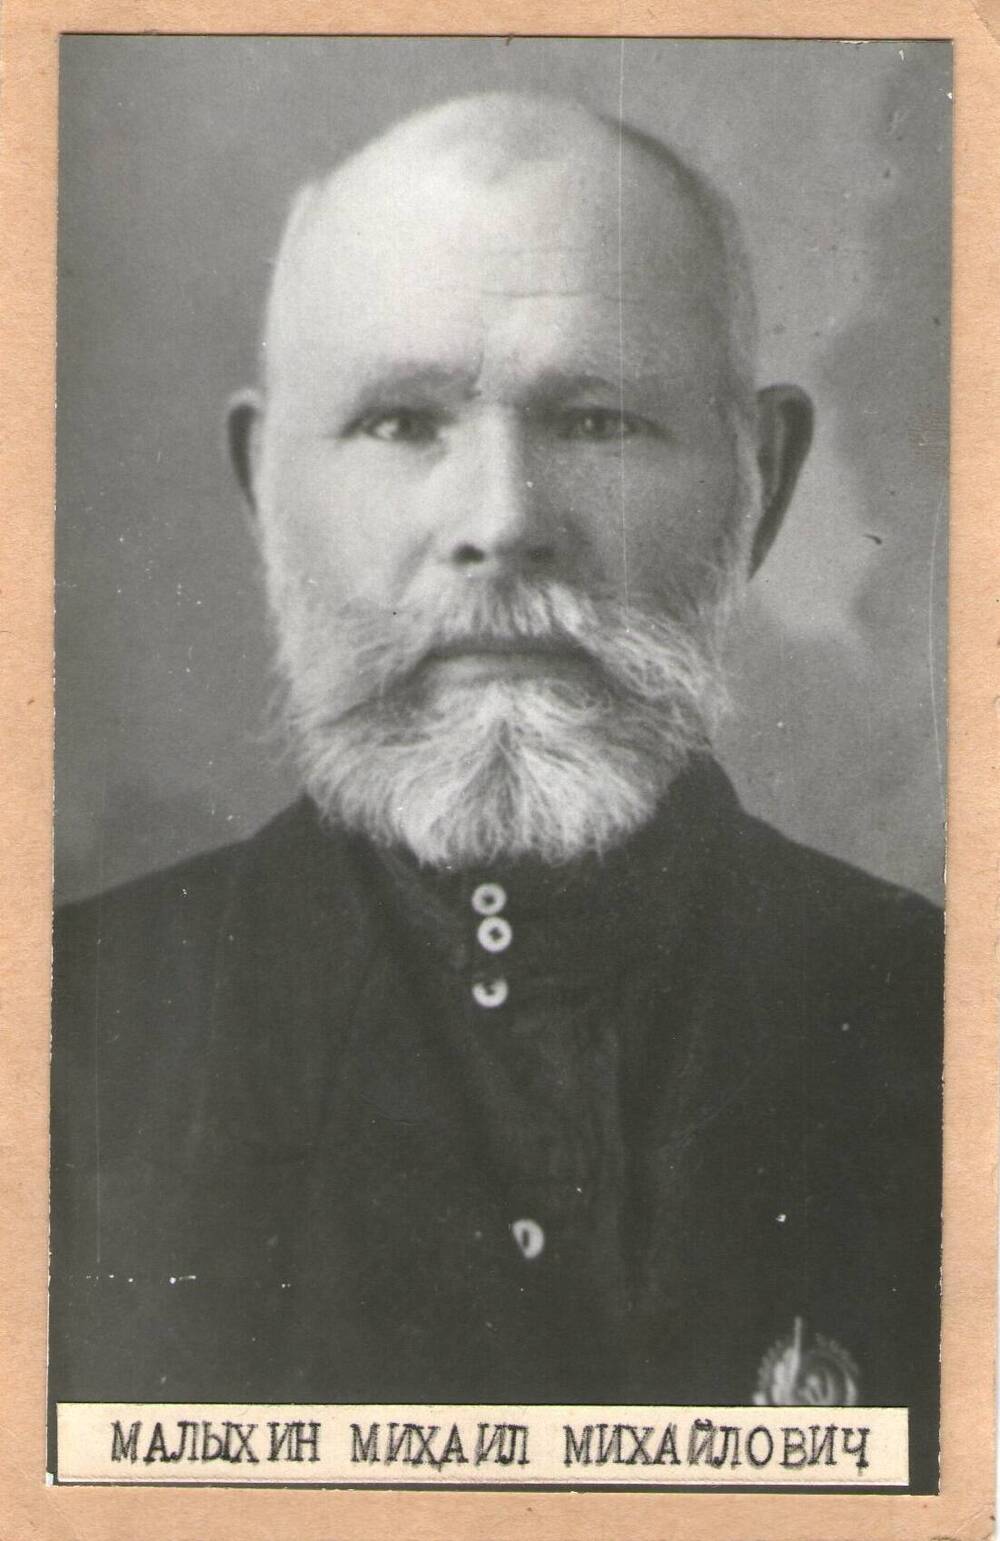 Фото Малыхина М.М. одного из первых орденоносцев Большеглушицкого района